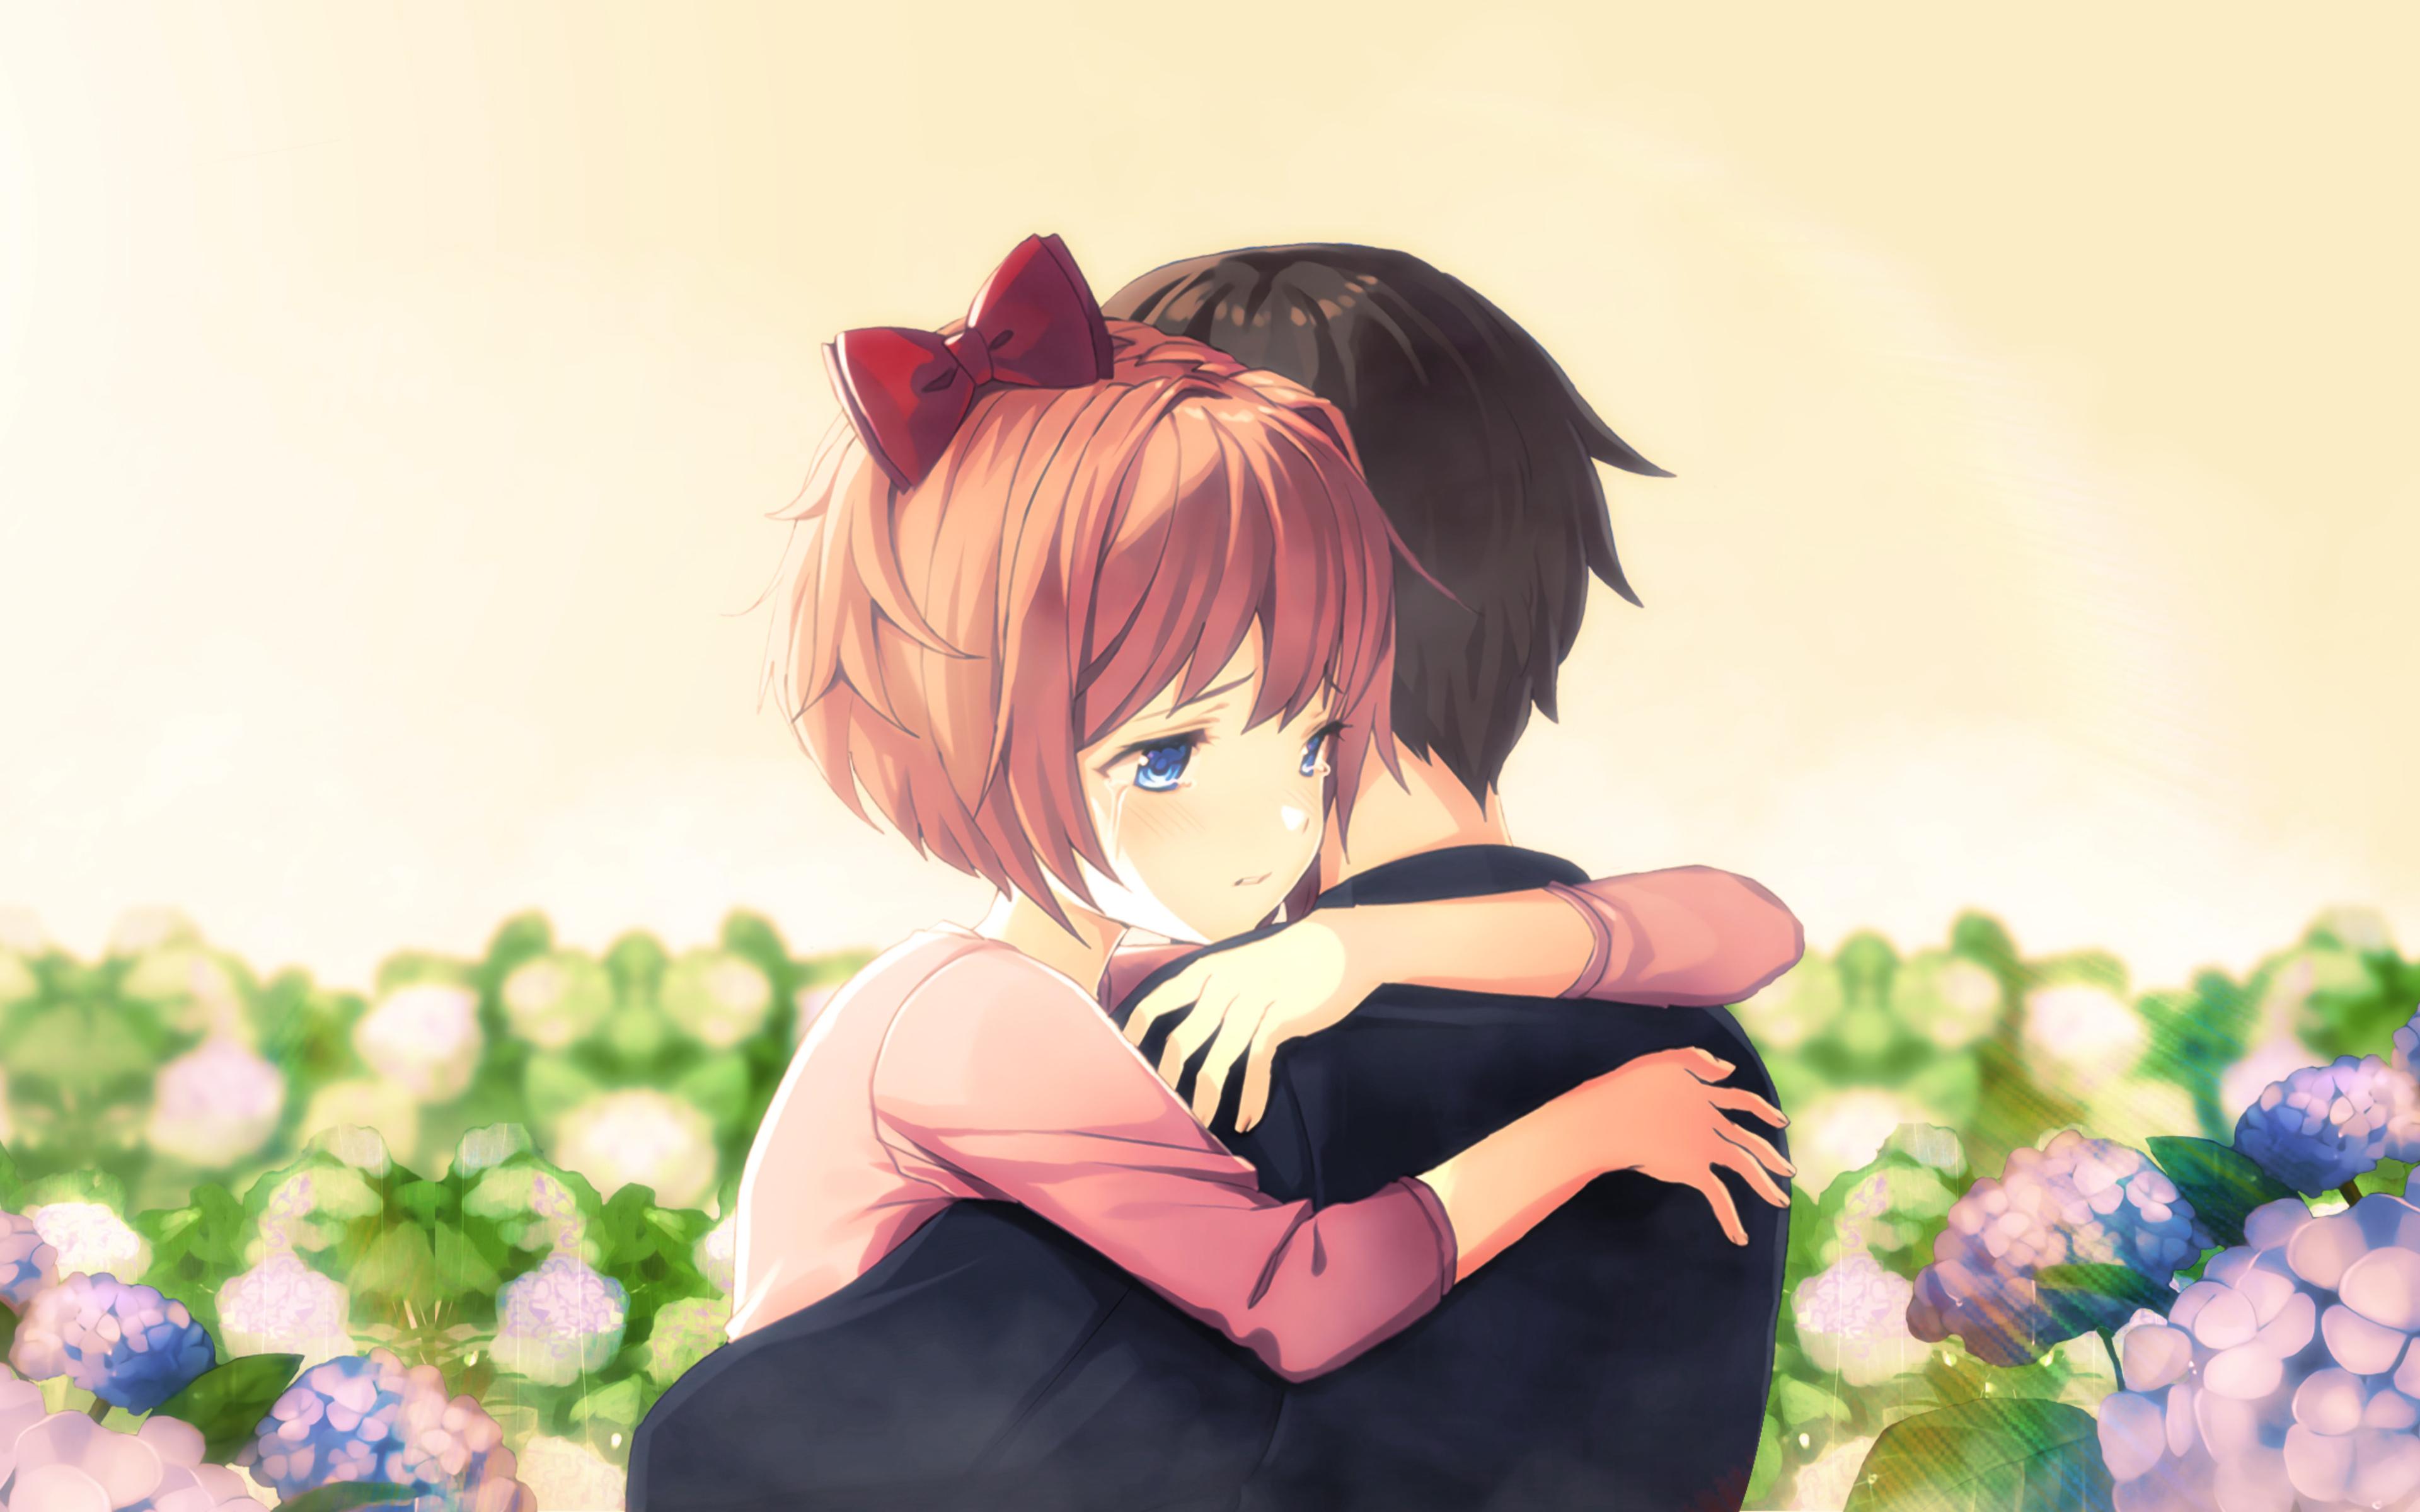 Anime couple sad hug HD wallpapers | Pxfuel